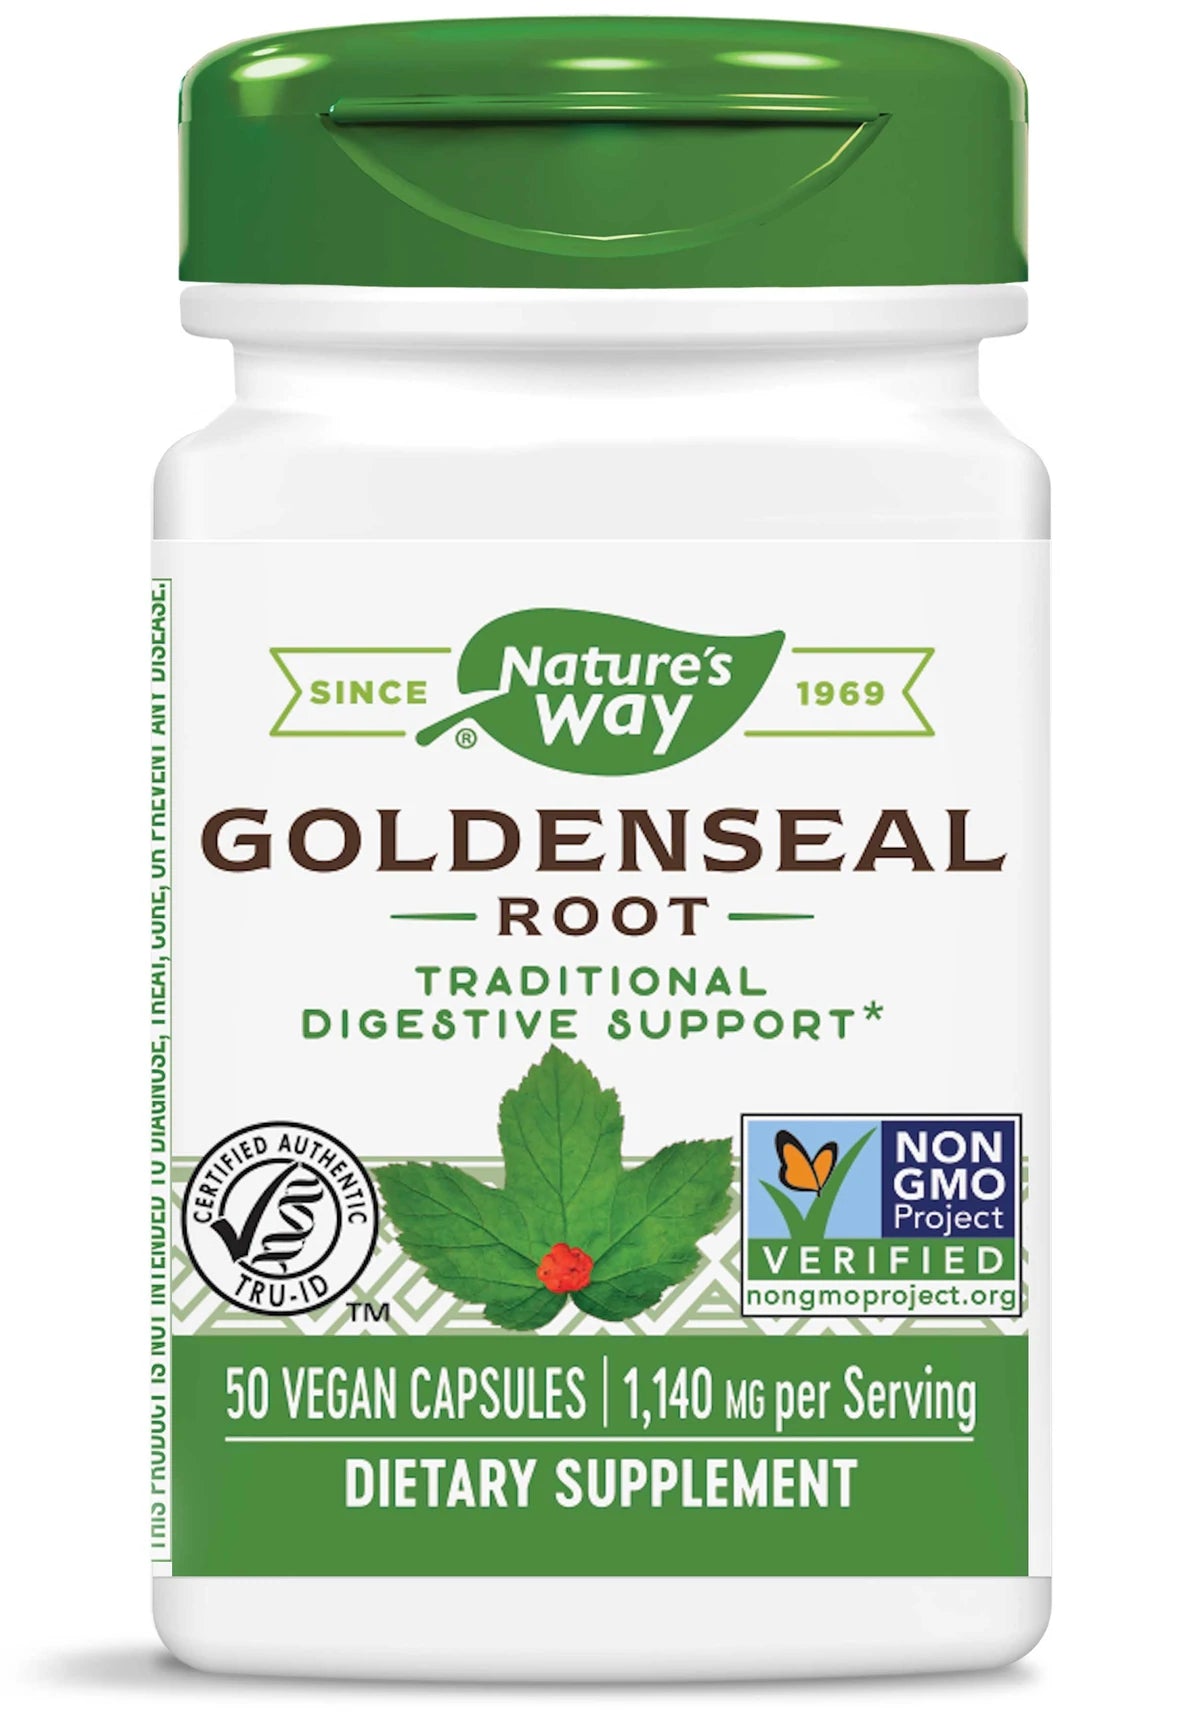 Natures way goldenseal 50 vegan capsules